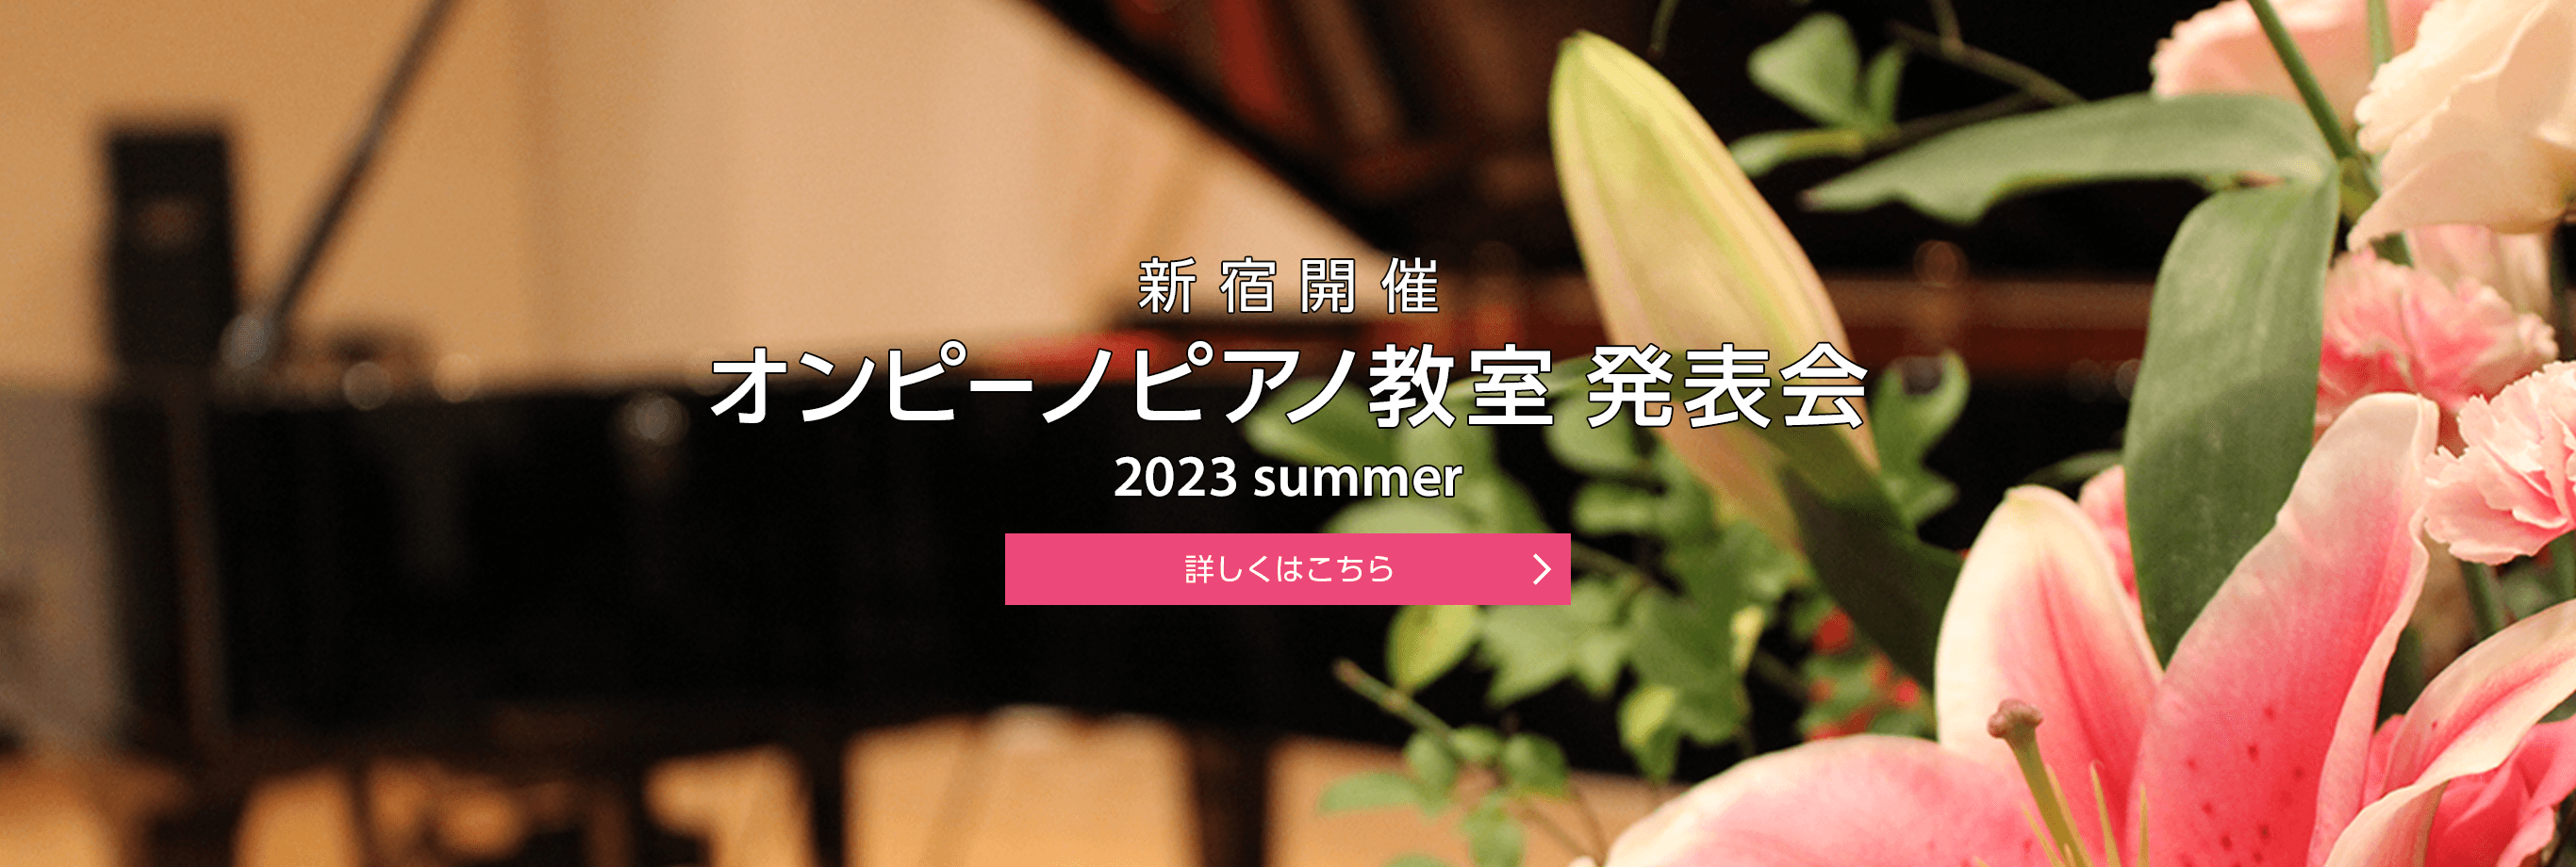 新宿開催 オンピーノピアノ教室 発表会 2020 winter 詳しくはこちら